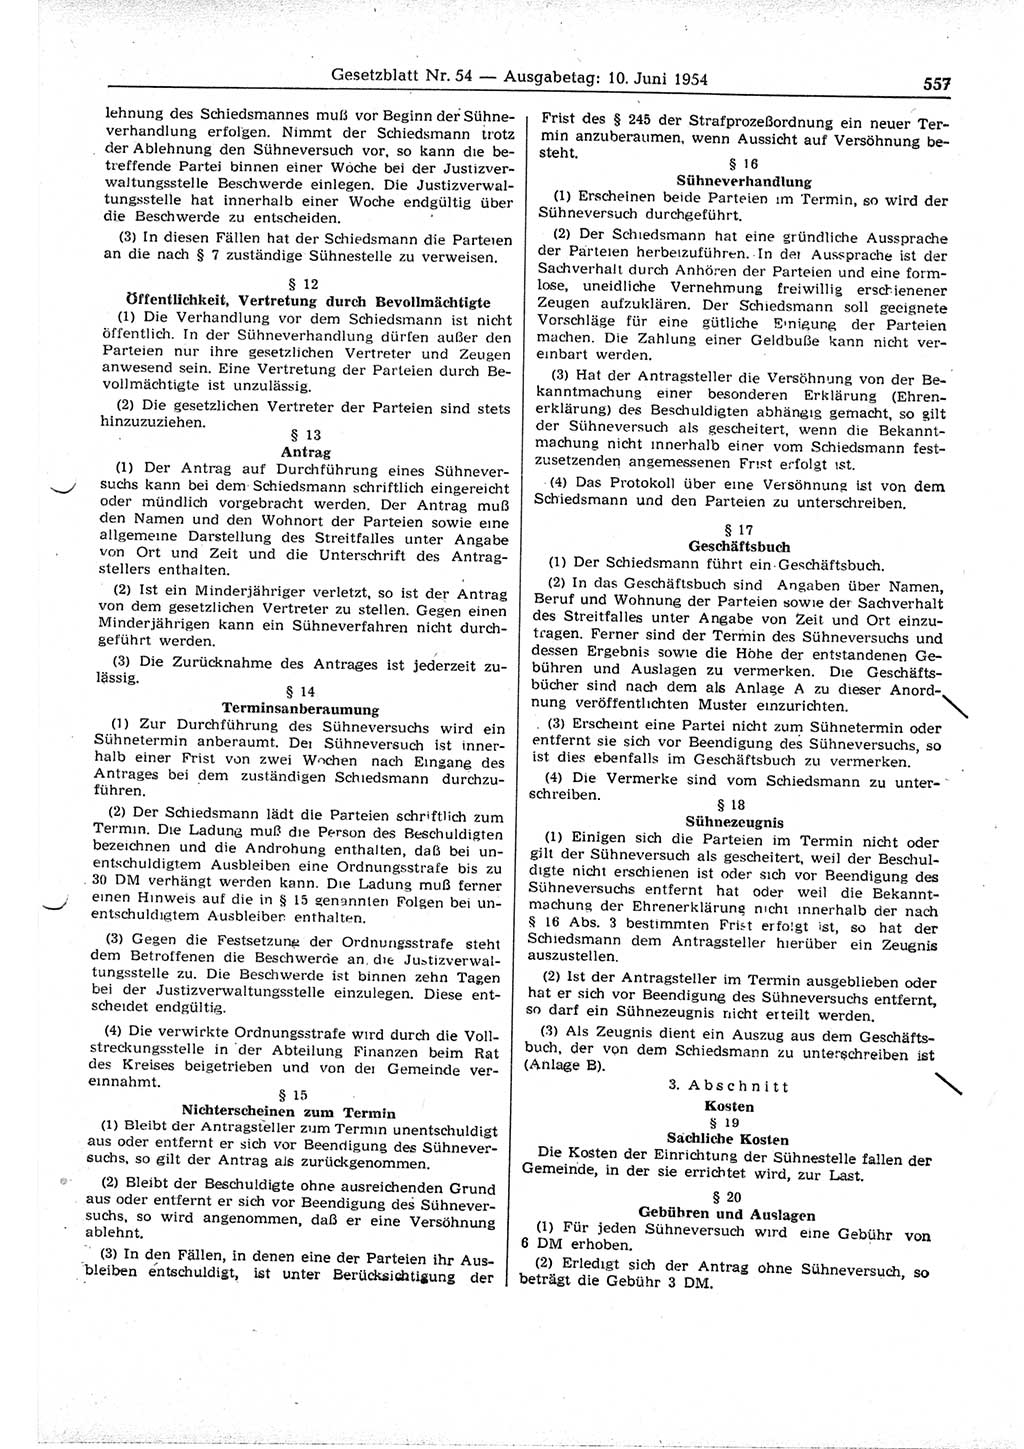 Gesetzblatt (GBl.) der Deutschen Demokratischen Republik (DDR) 1954, Seite 557 (GBl. DDR 1954, S. 557)